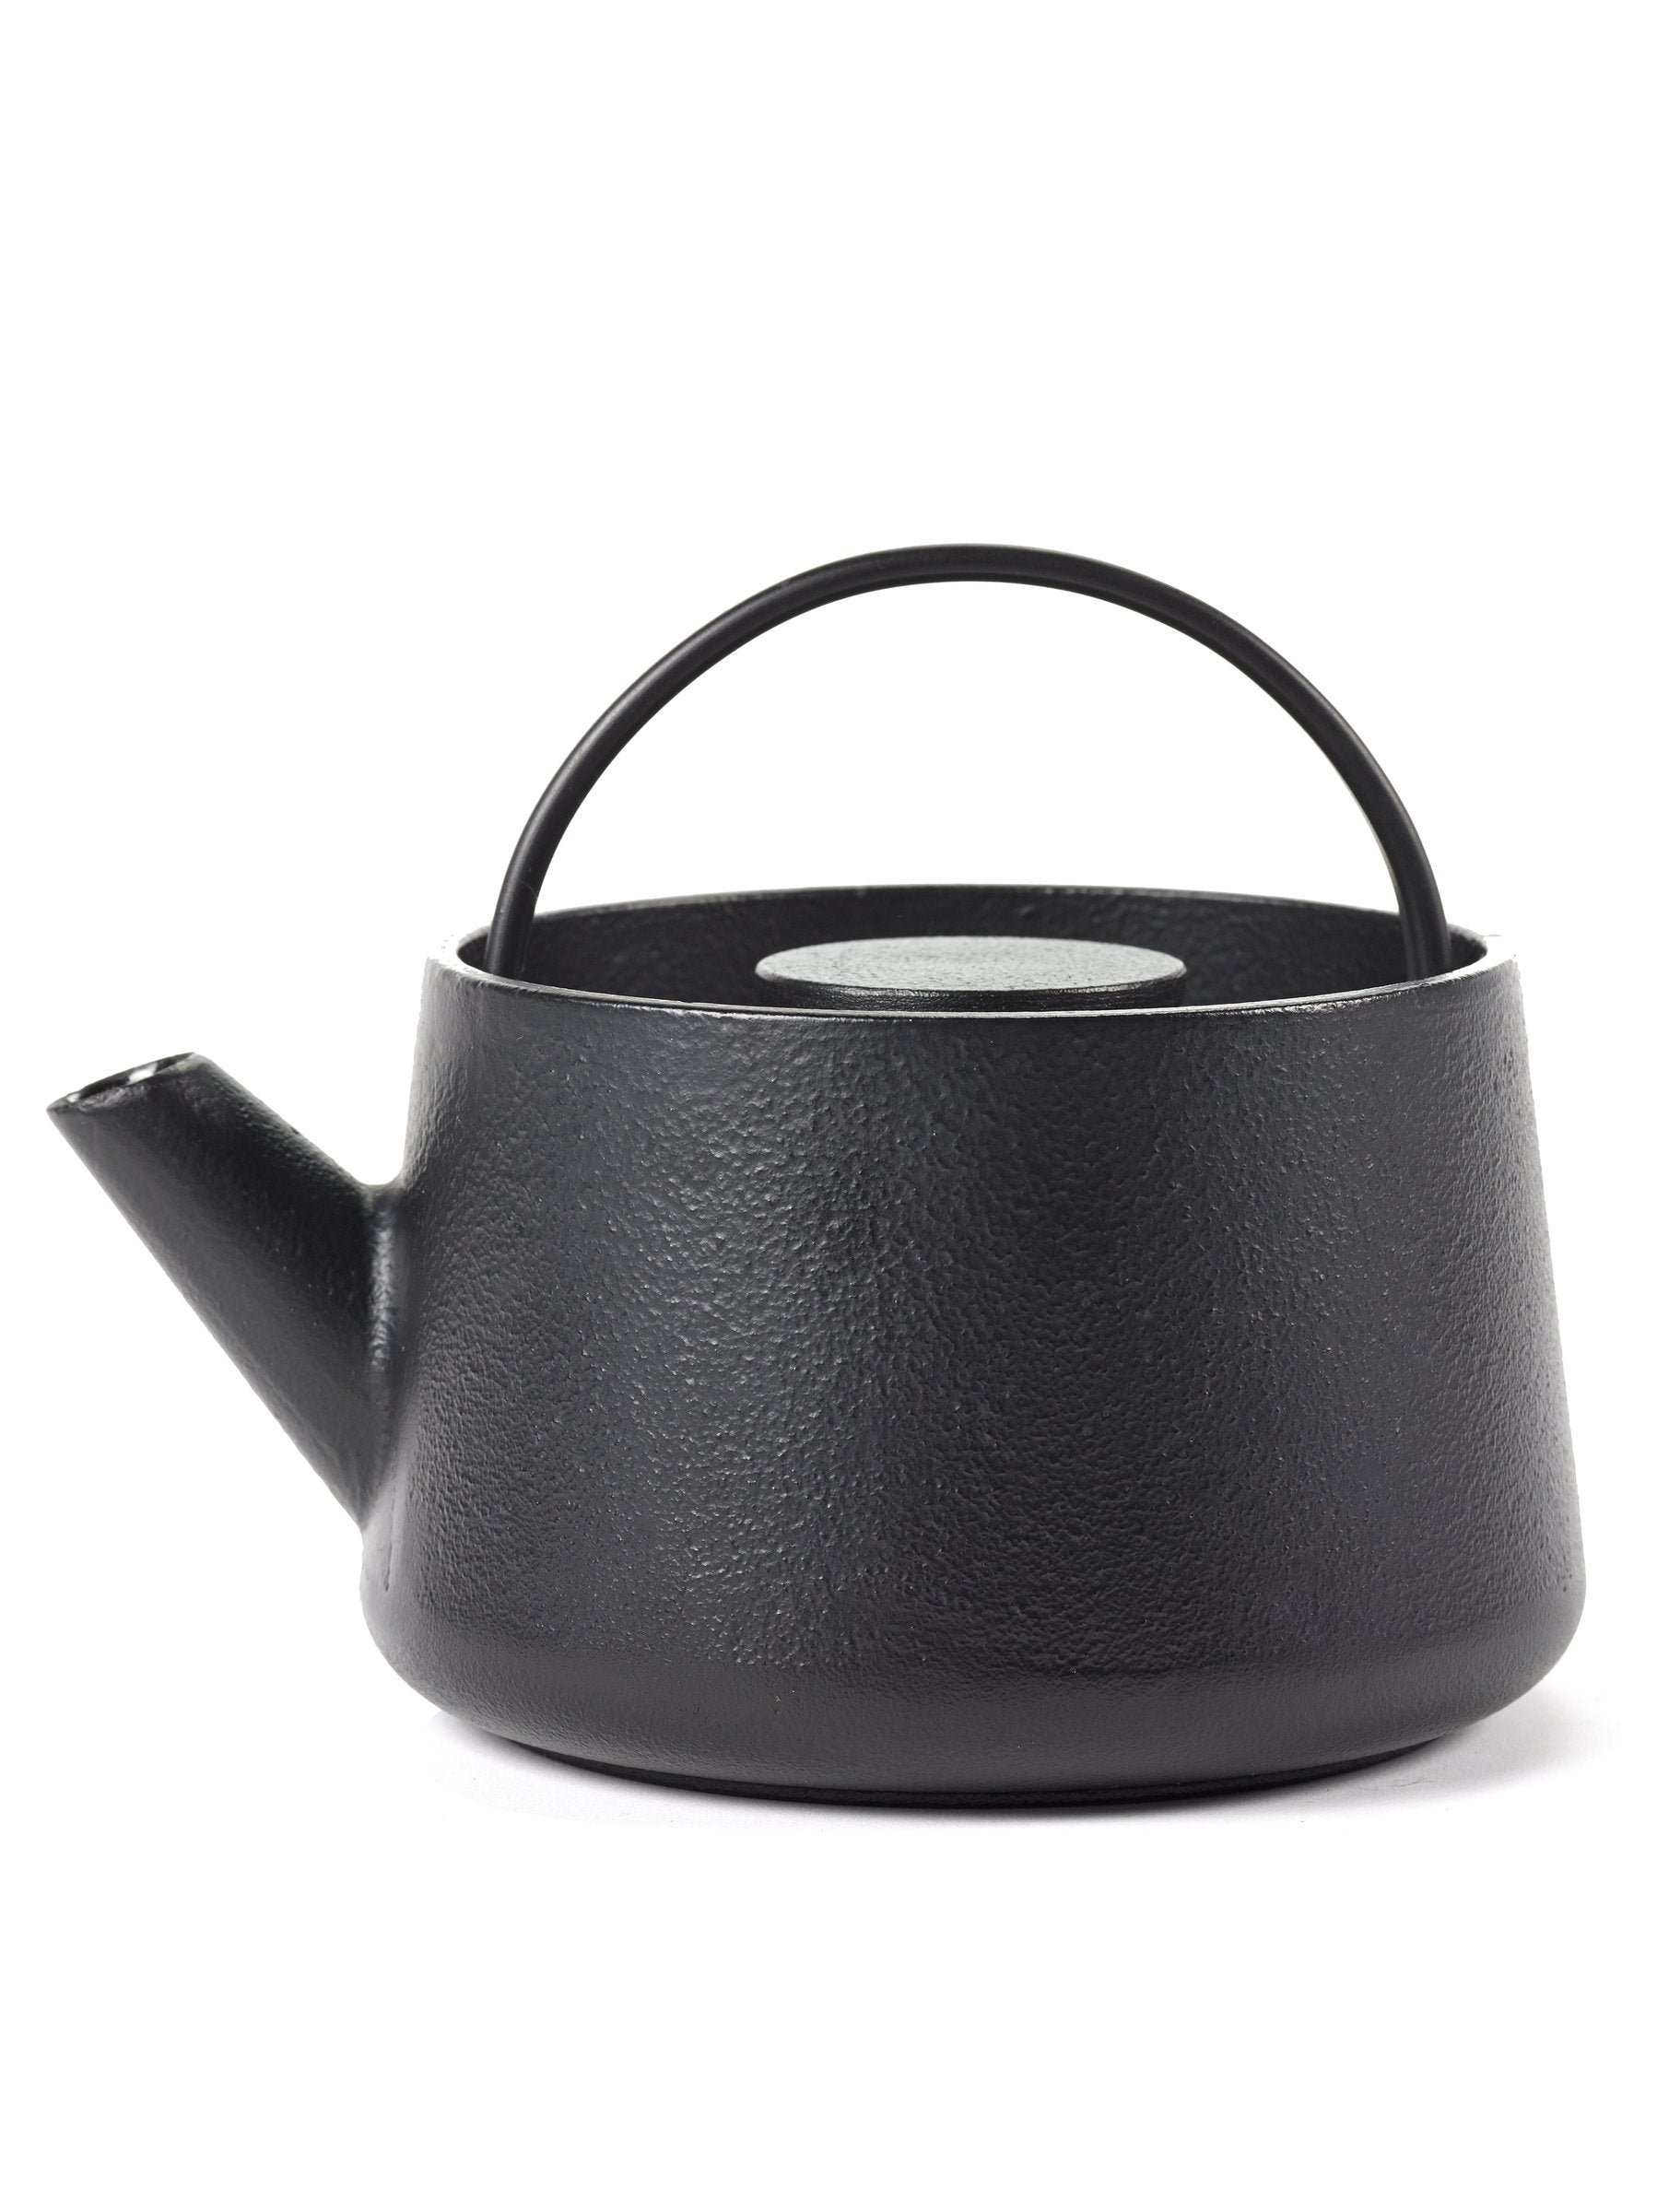 Inku Cast Iron Teapot